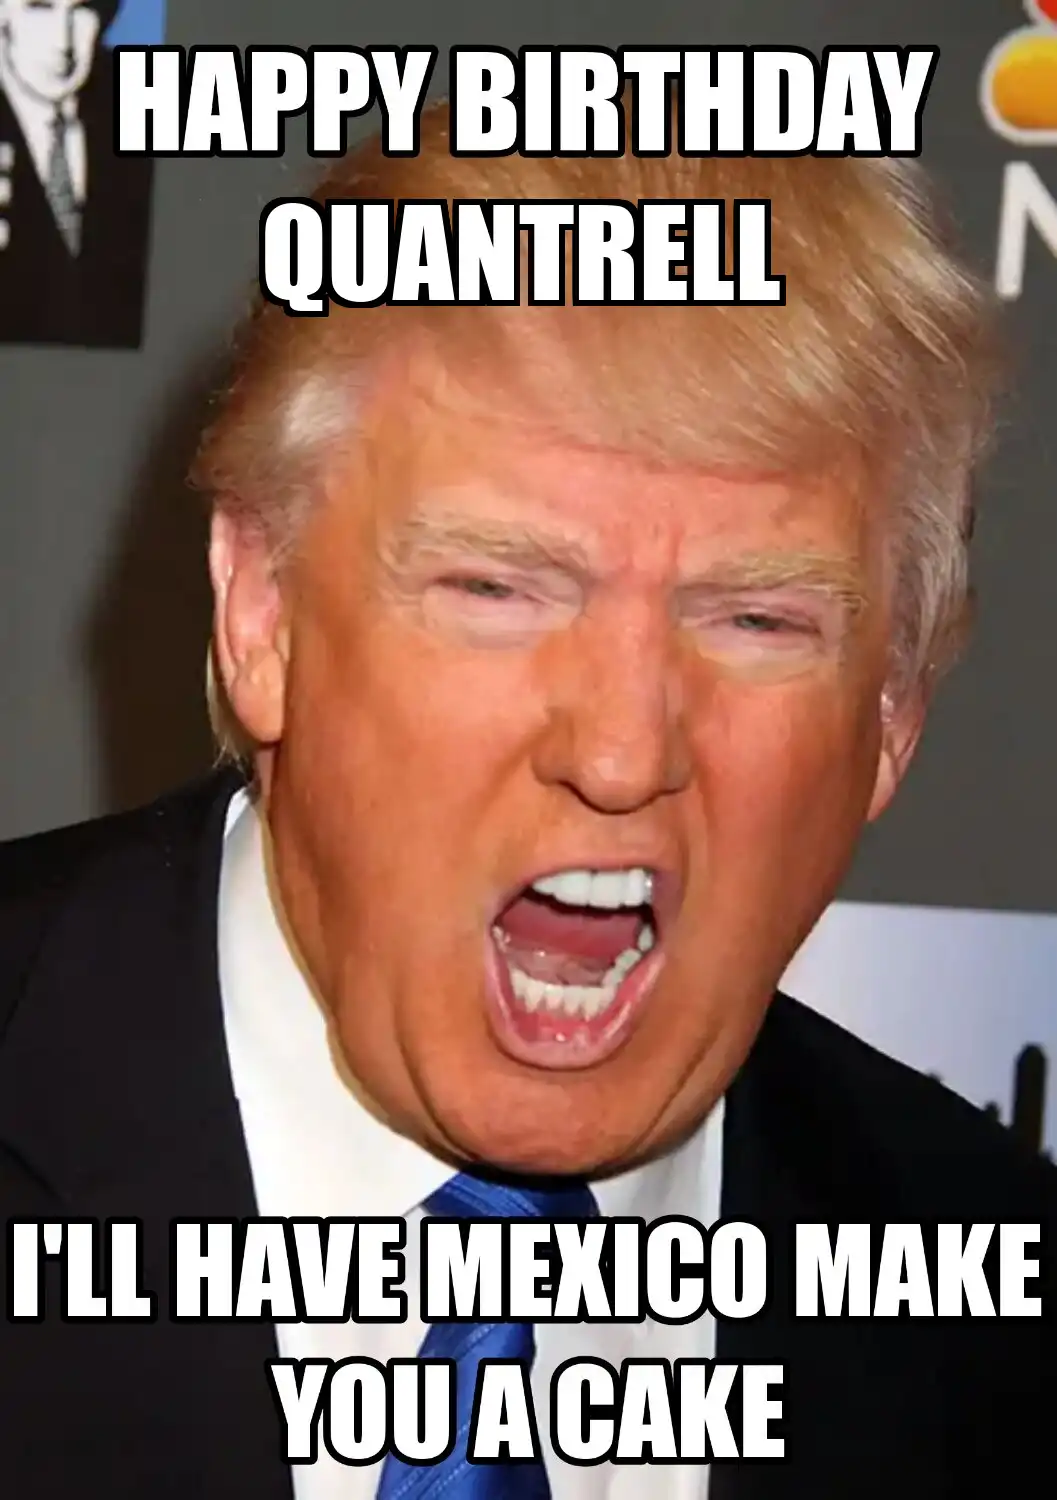 Happy Birthday Quantrell Mexico Make You A Cake Meme